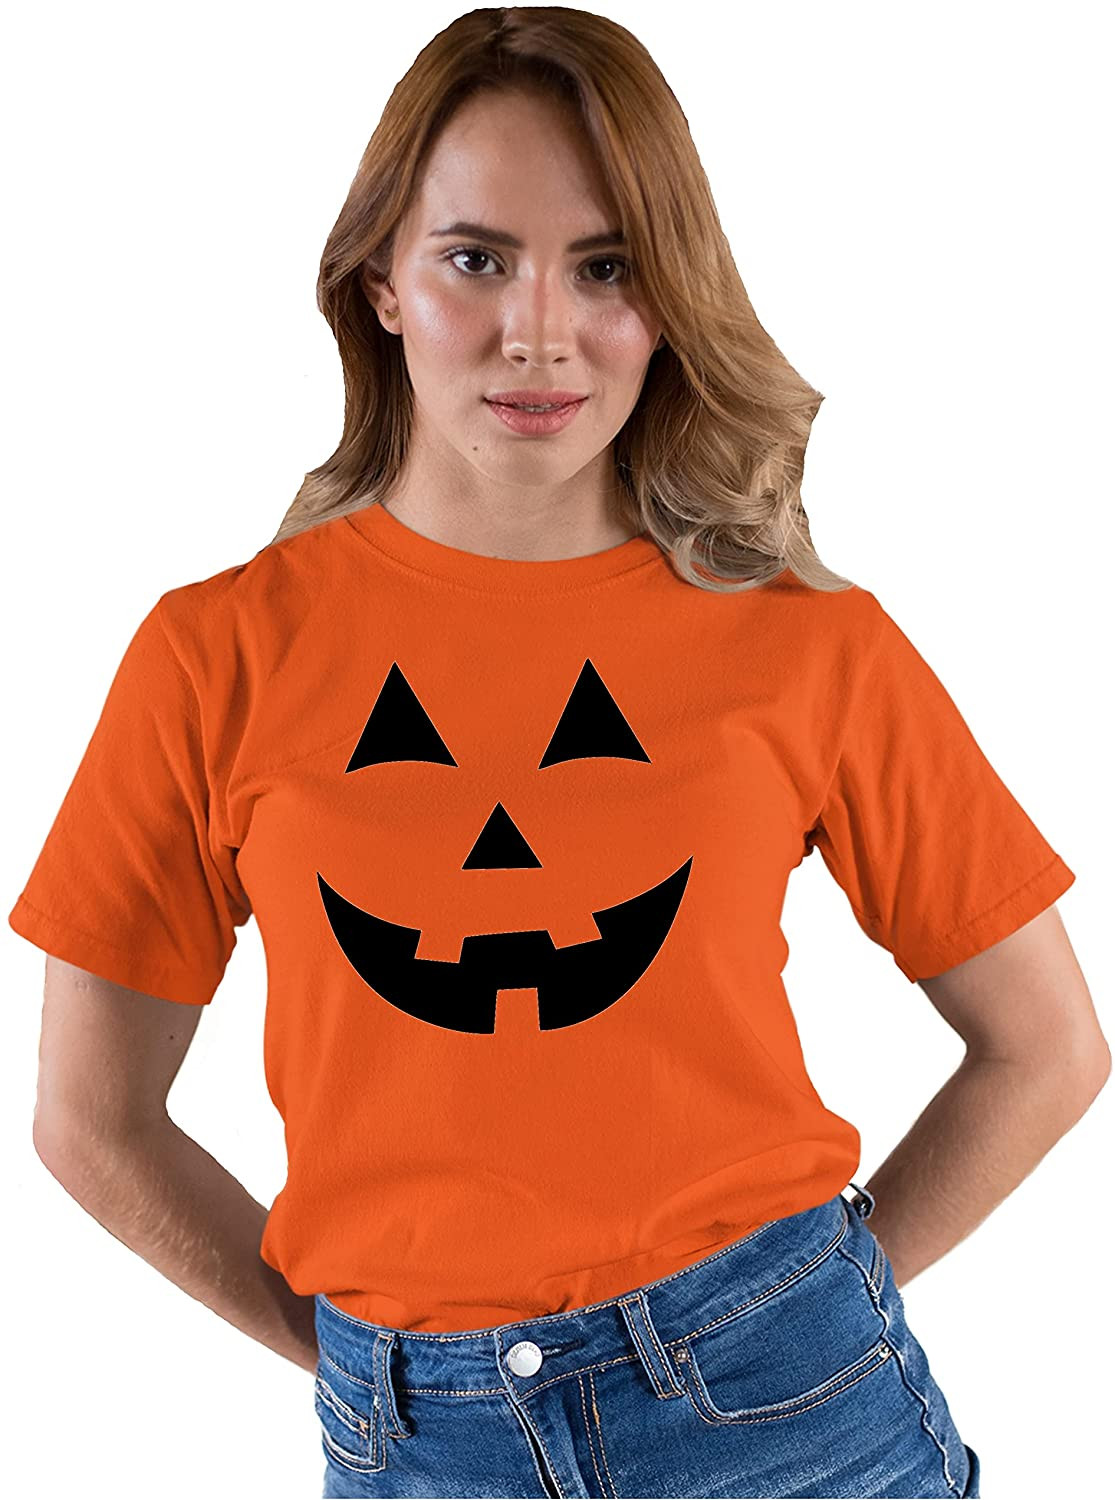 Jack O Lantern Pumpkin Face Halloween T-Shirt